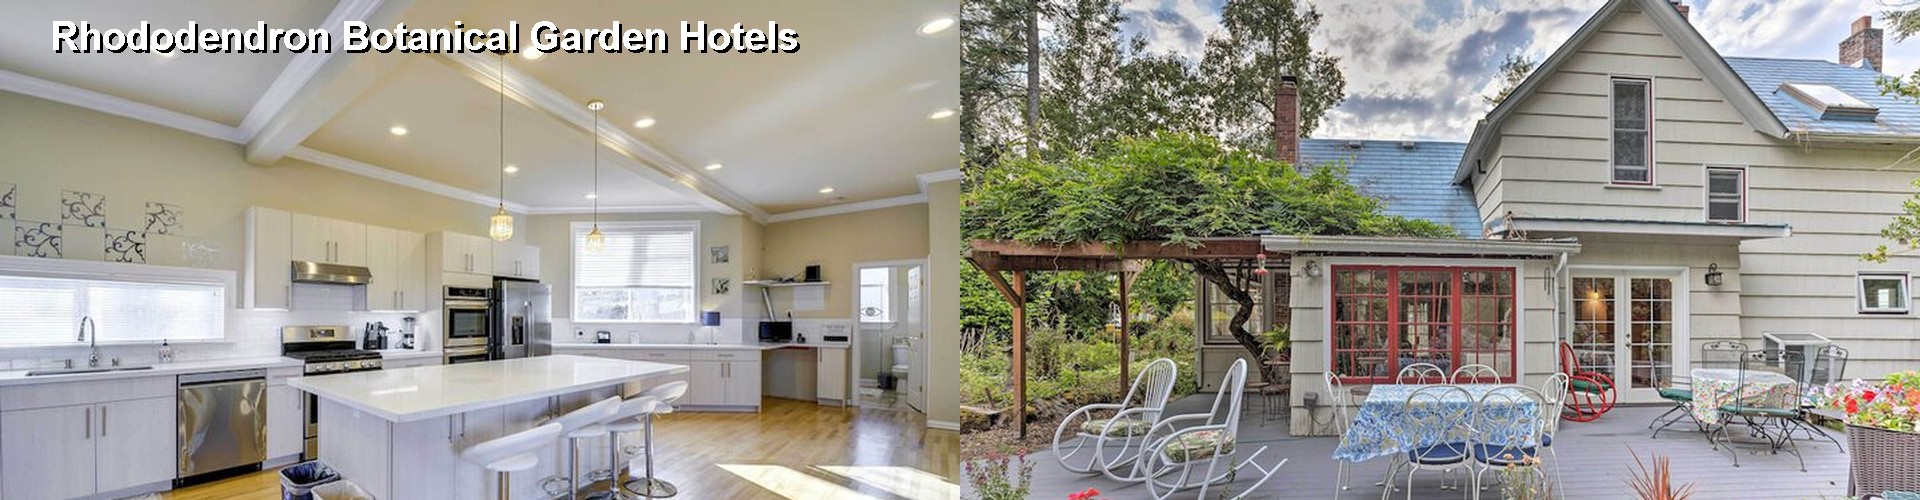 5 Best Hotels near Rhododendron Botanical Garden